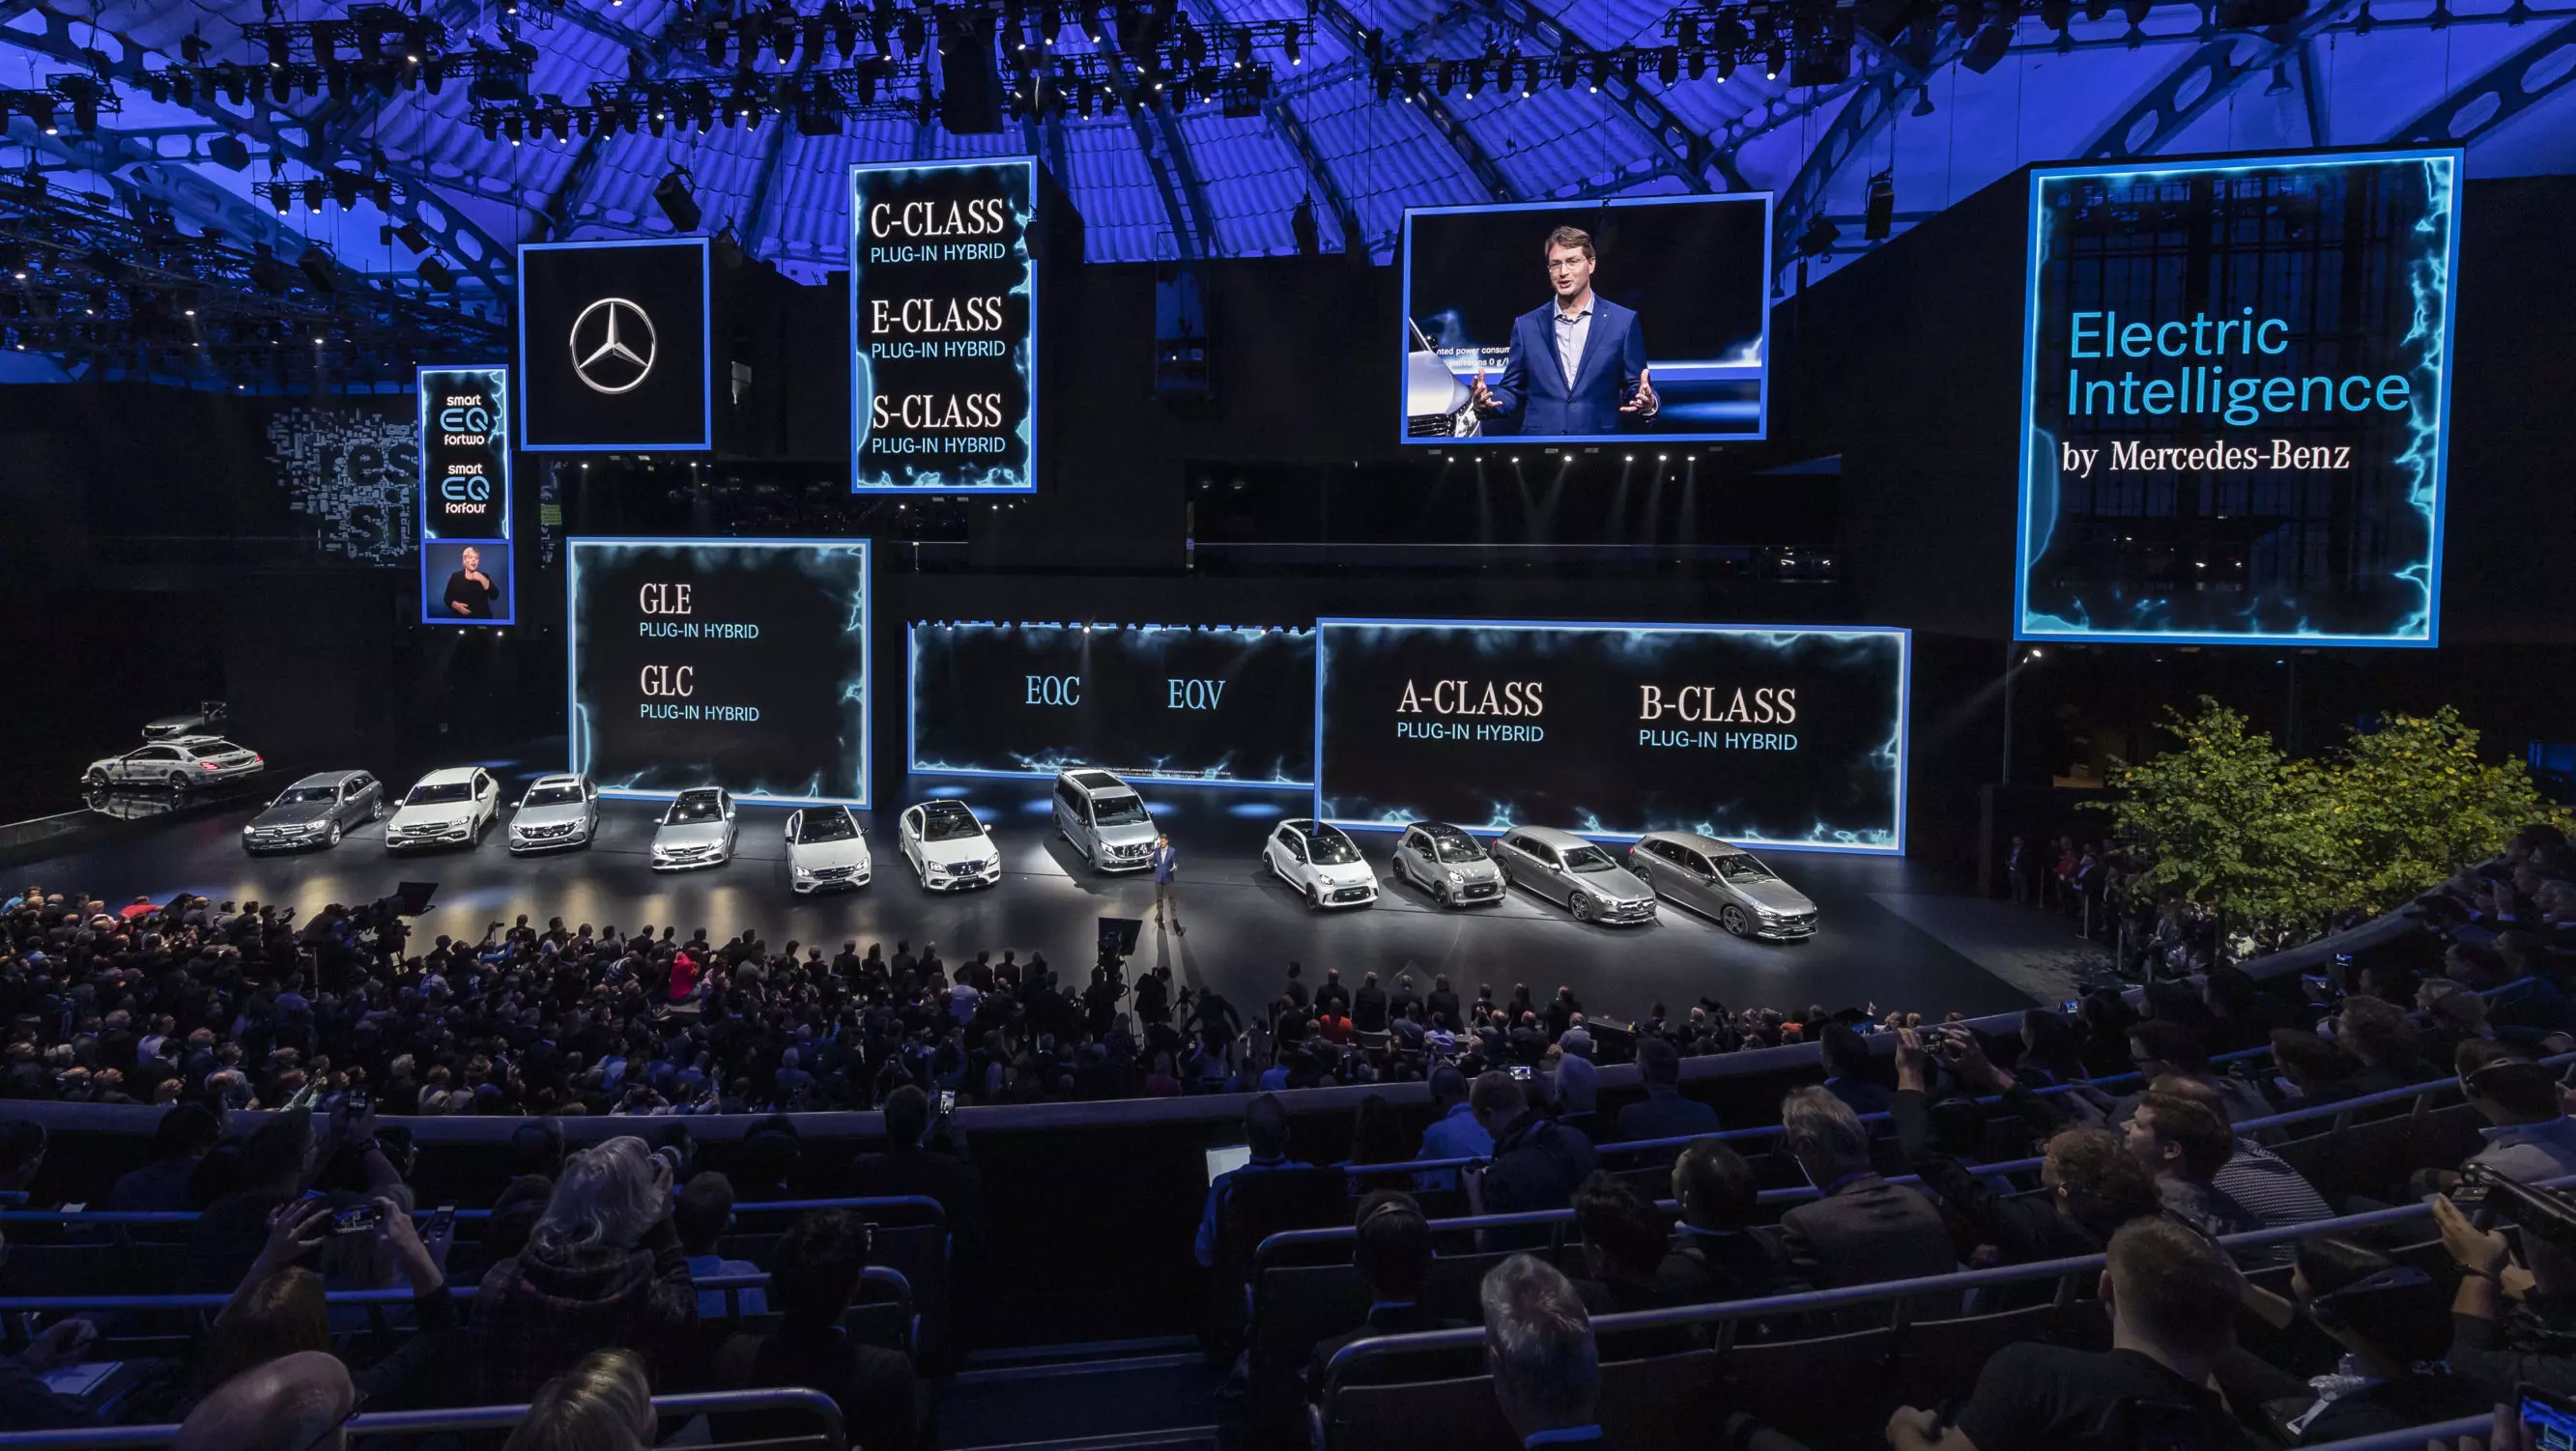 Mercedes-Benz, Frankfurt 2019 fonotaga faasalalau